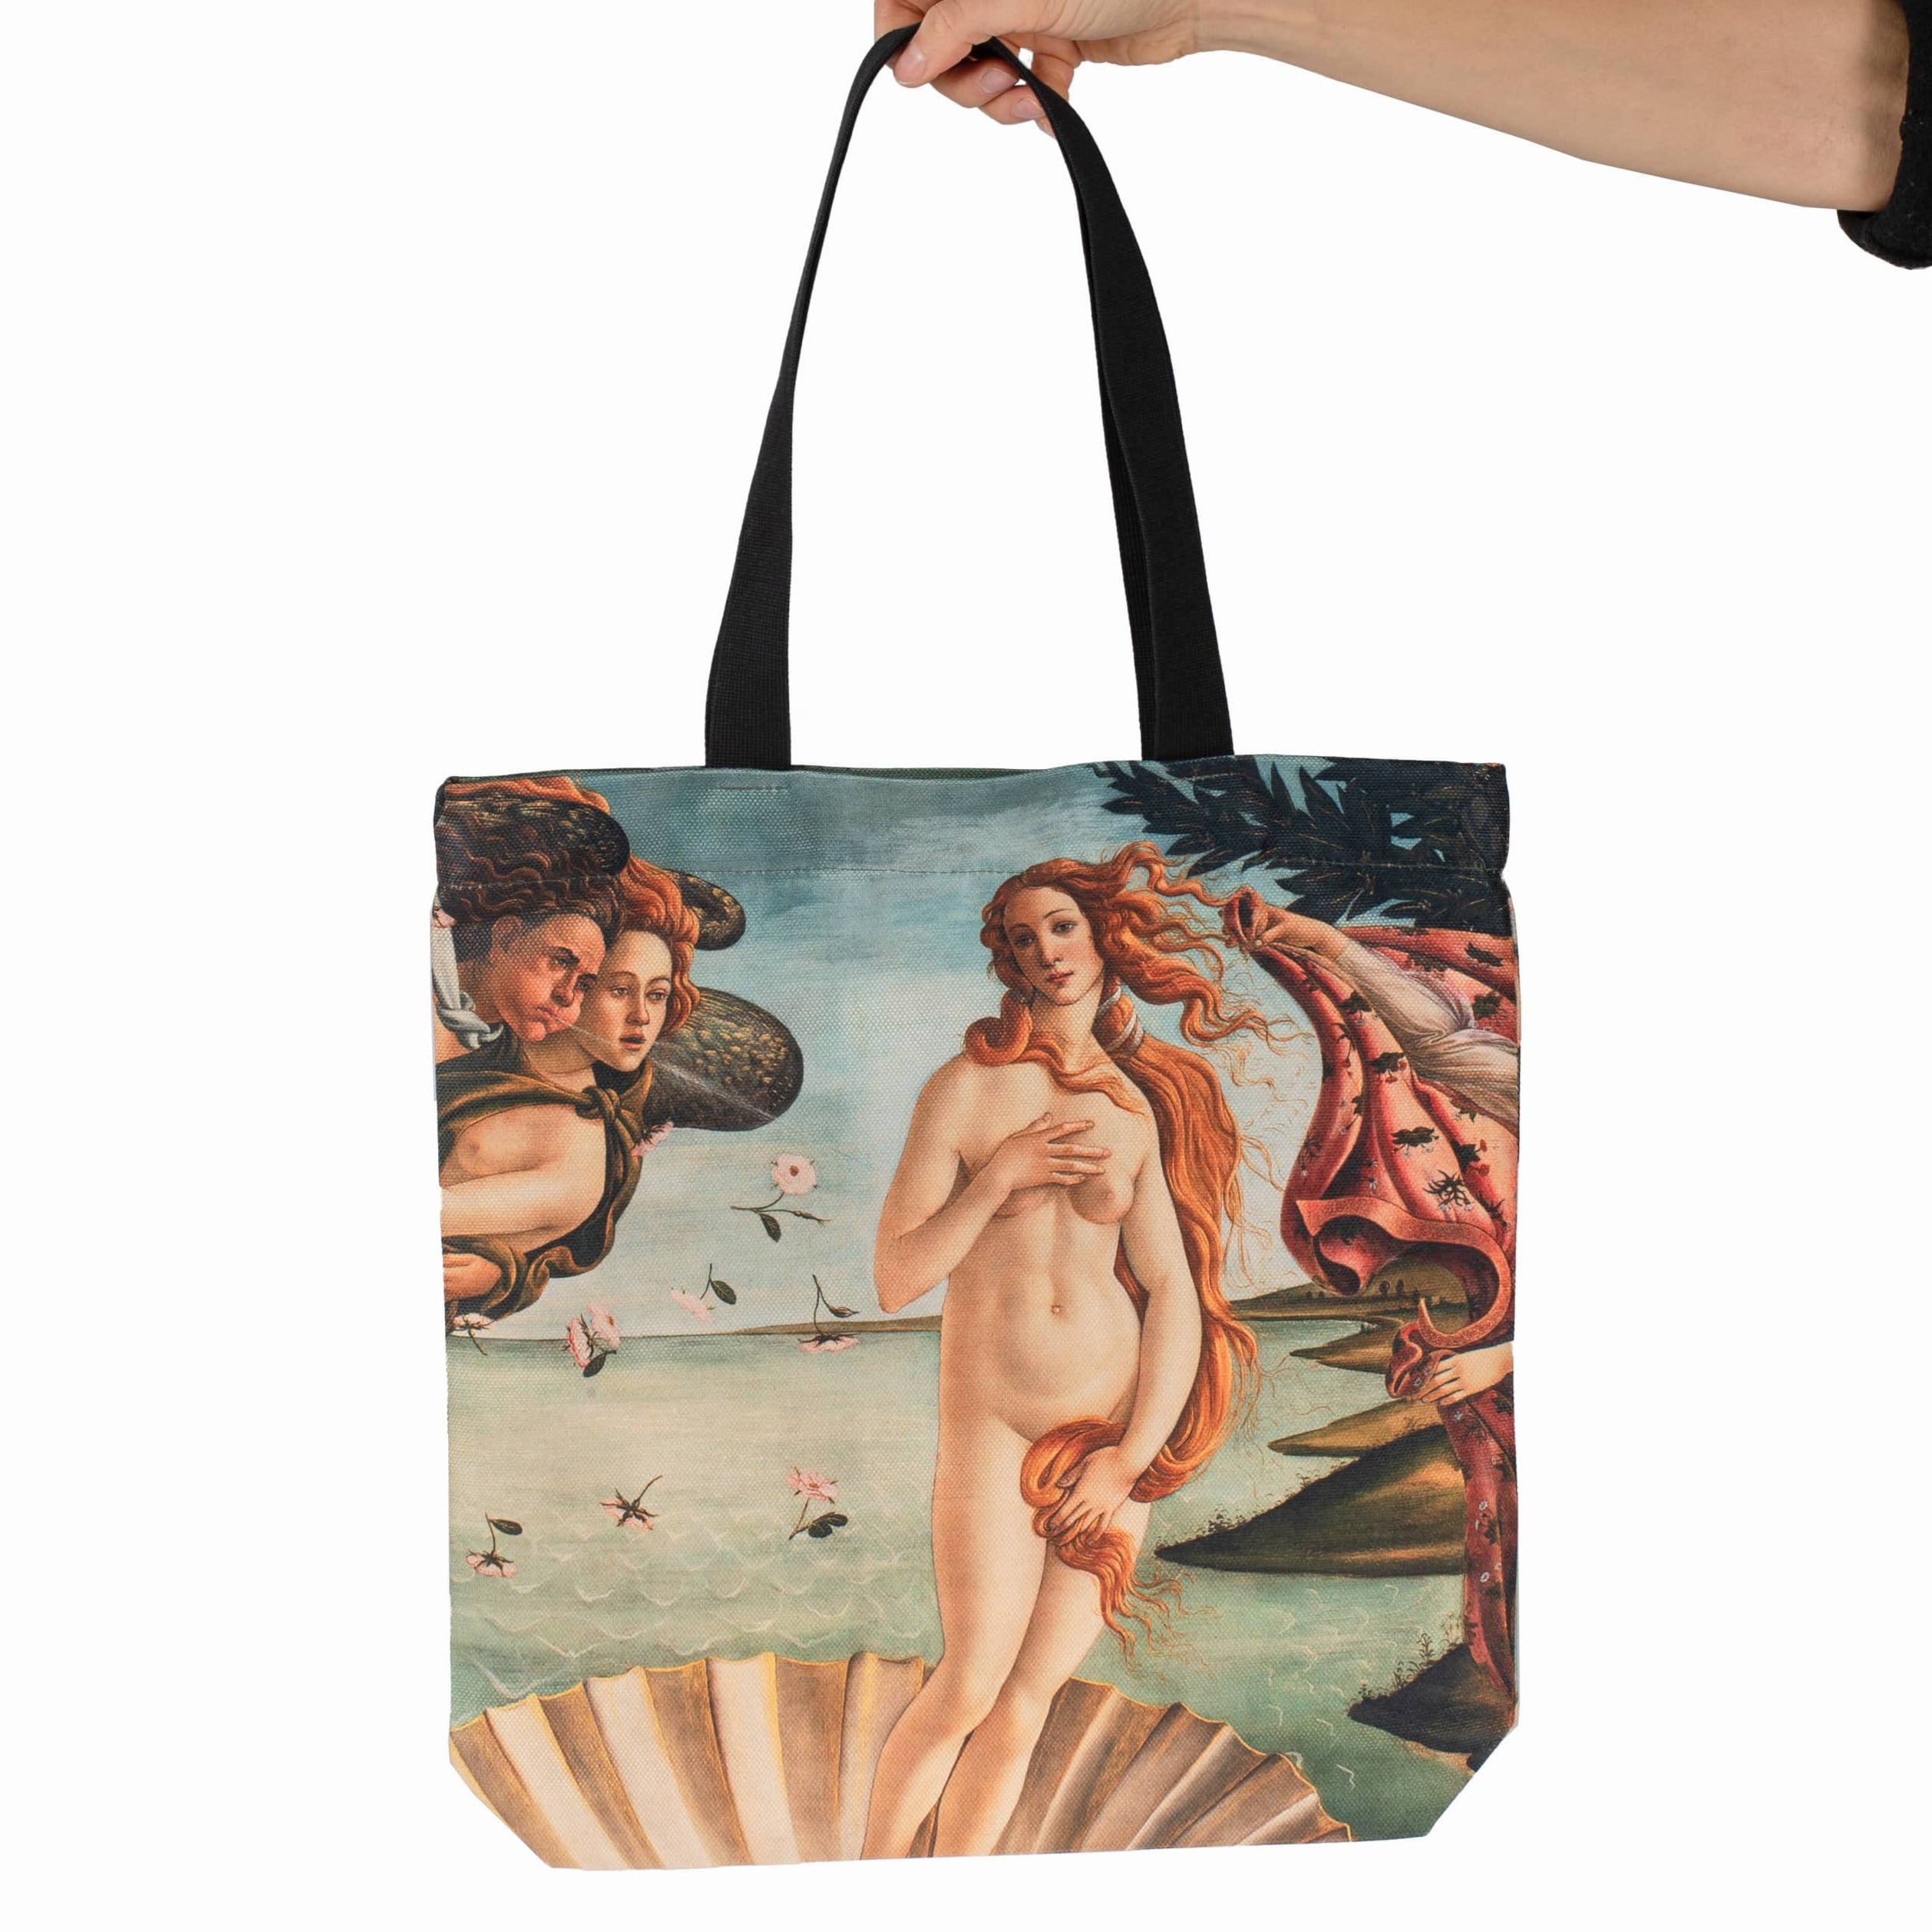 Pirkinių krepšys Sandro Botticelli "The Birth of Venus"